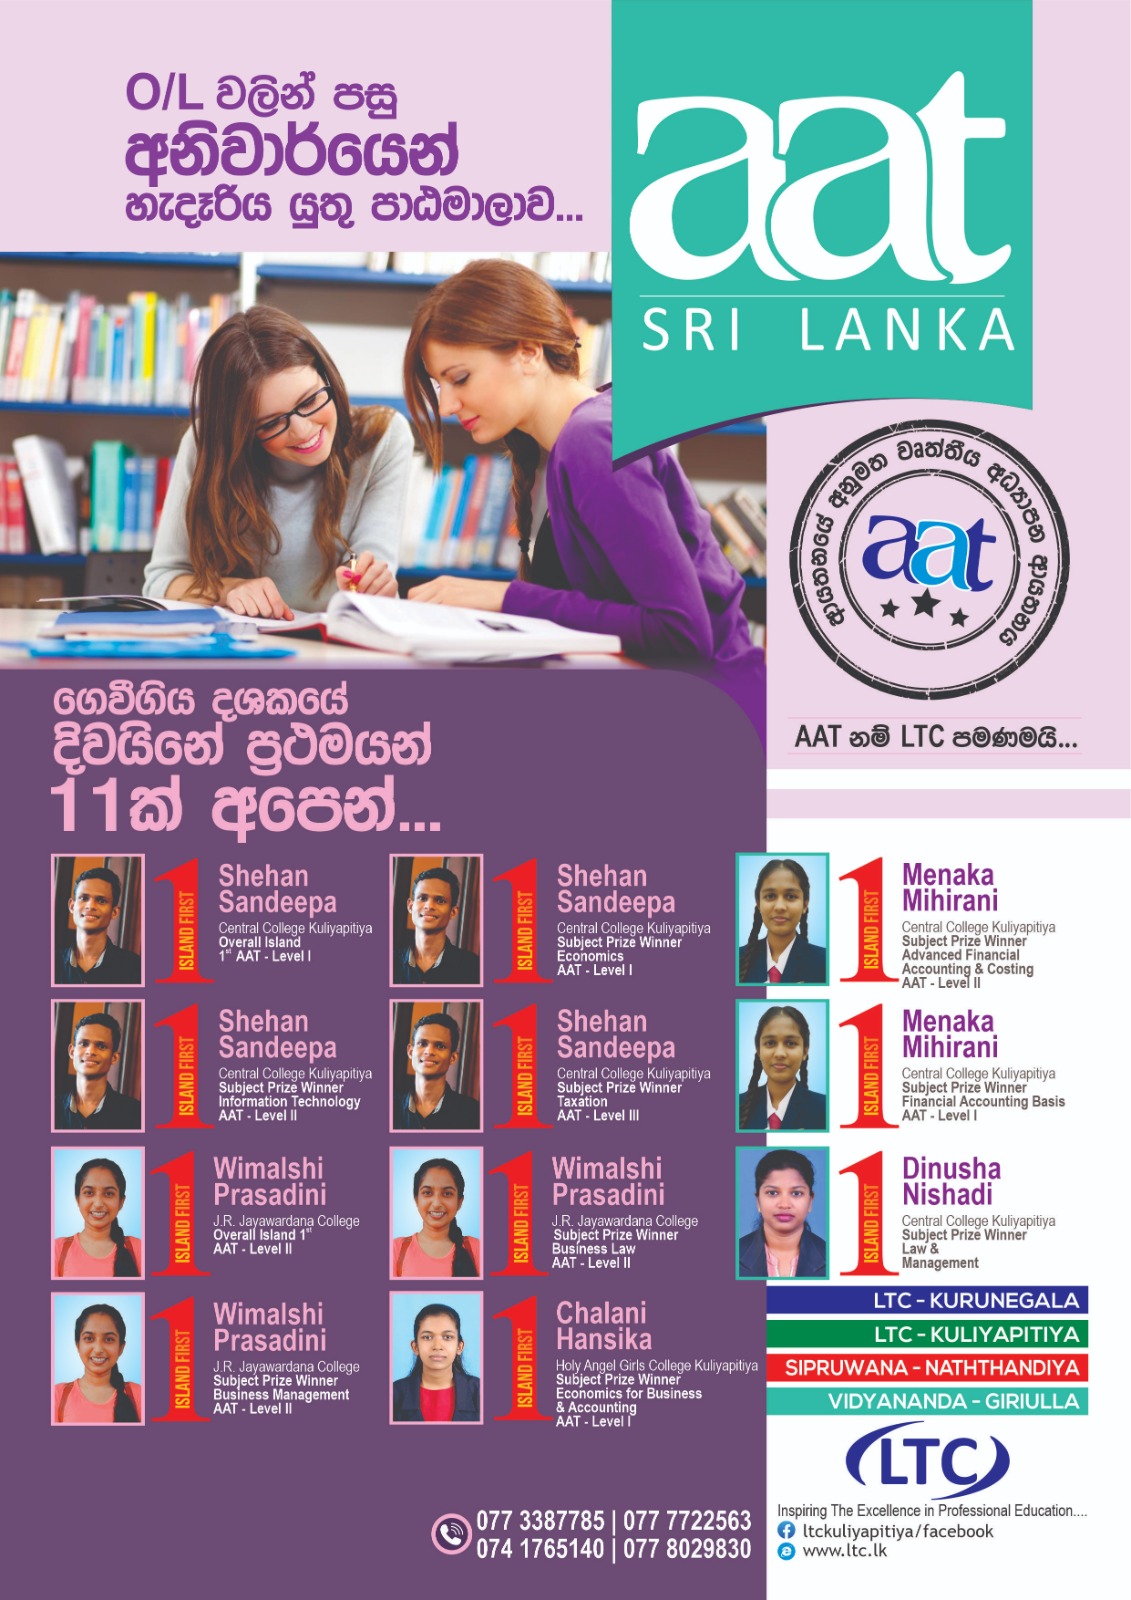 Ltc Educational Center Kuliyapitiya-New and Events